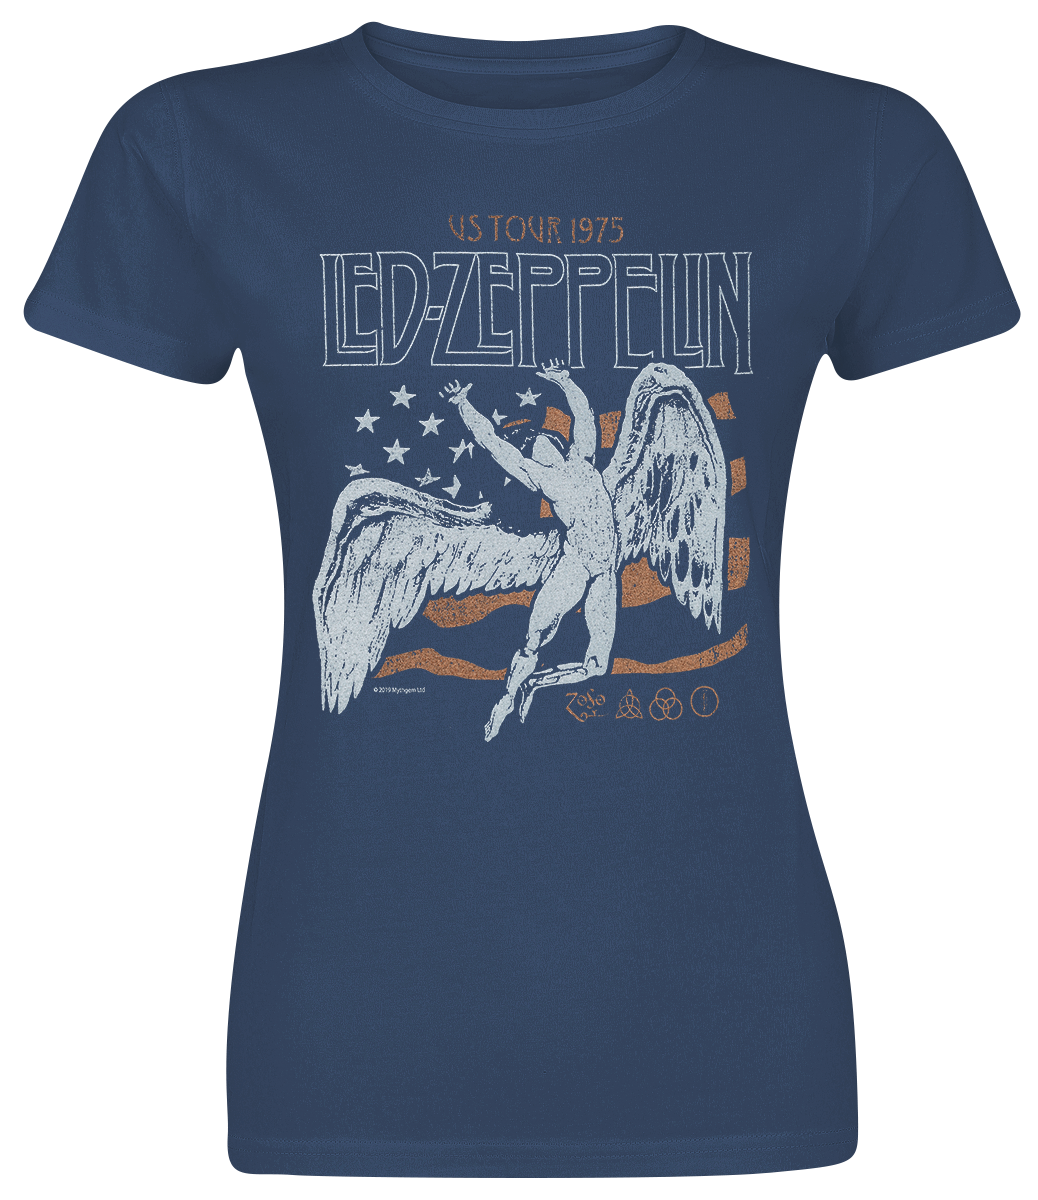 Led Zeppelin - US Tour 1975 Flag - Girls shirt - navy image